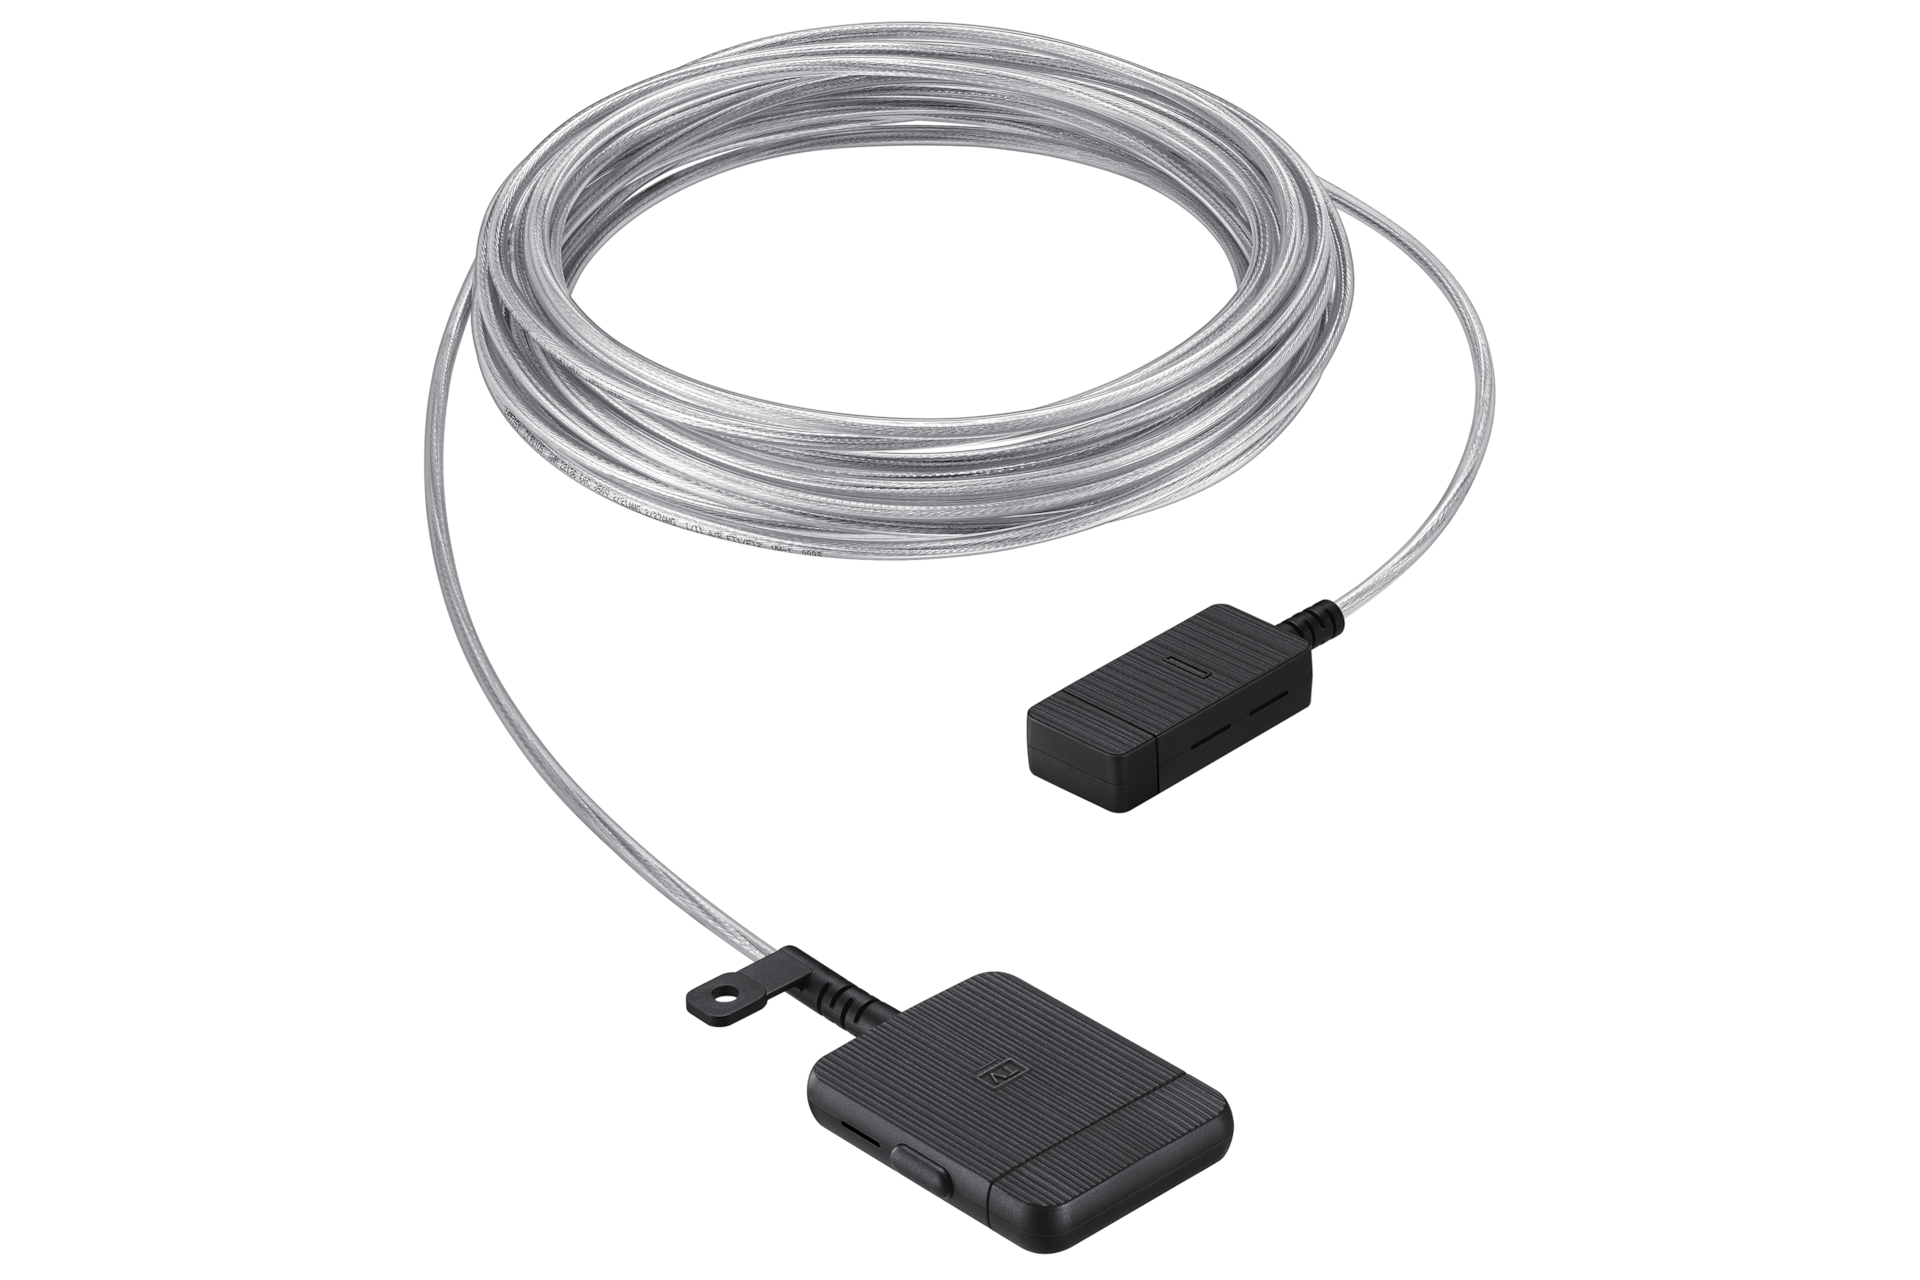 Transparentny kabel do telewizora z czarnymi wtyczkami, o długości 15m. Wybierz Prawie Niewidoczny Przewód VG-SOCR15/XC od Samsung!